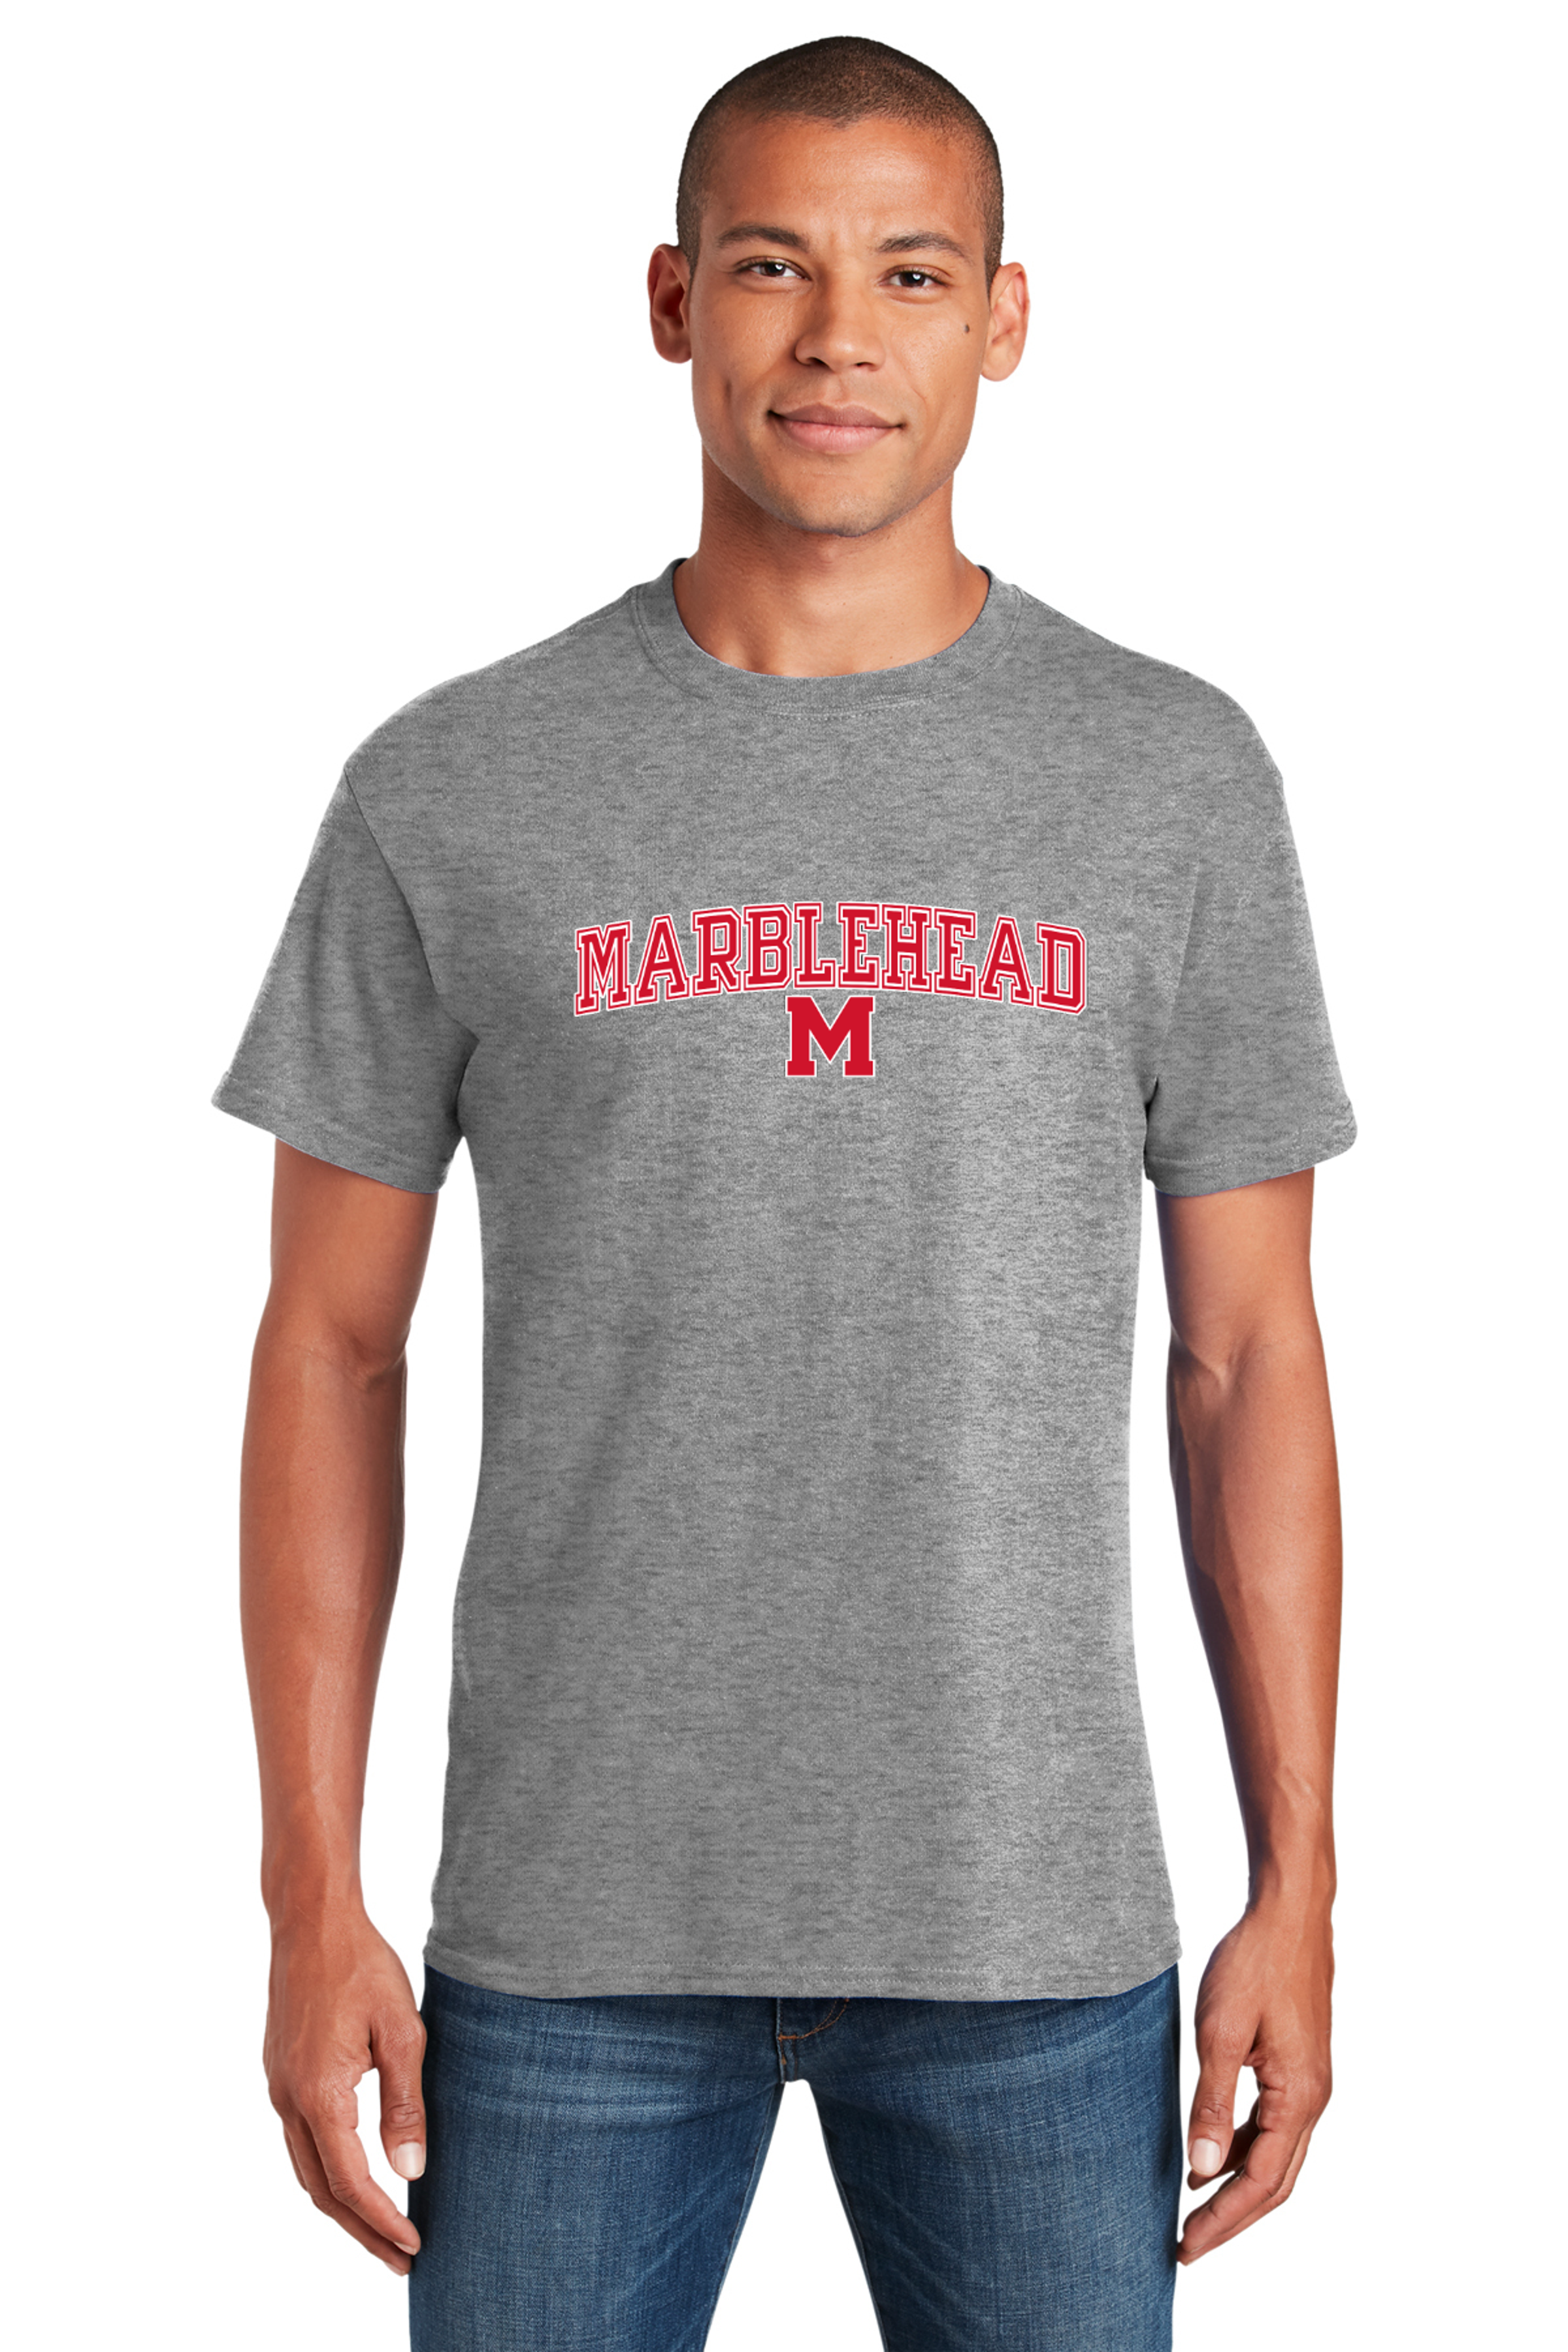 Marblehead M Heavyweight Tee